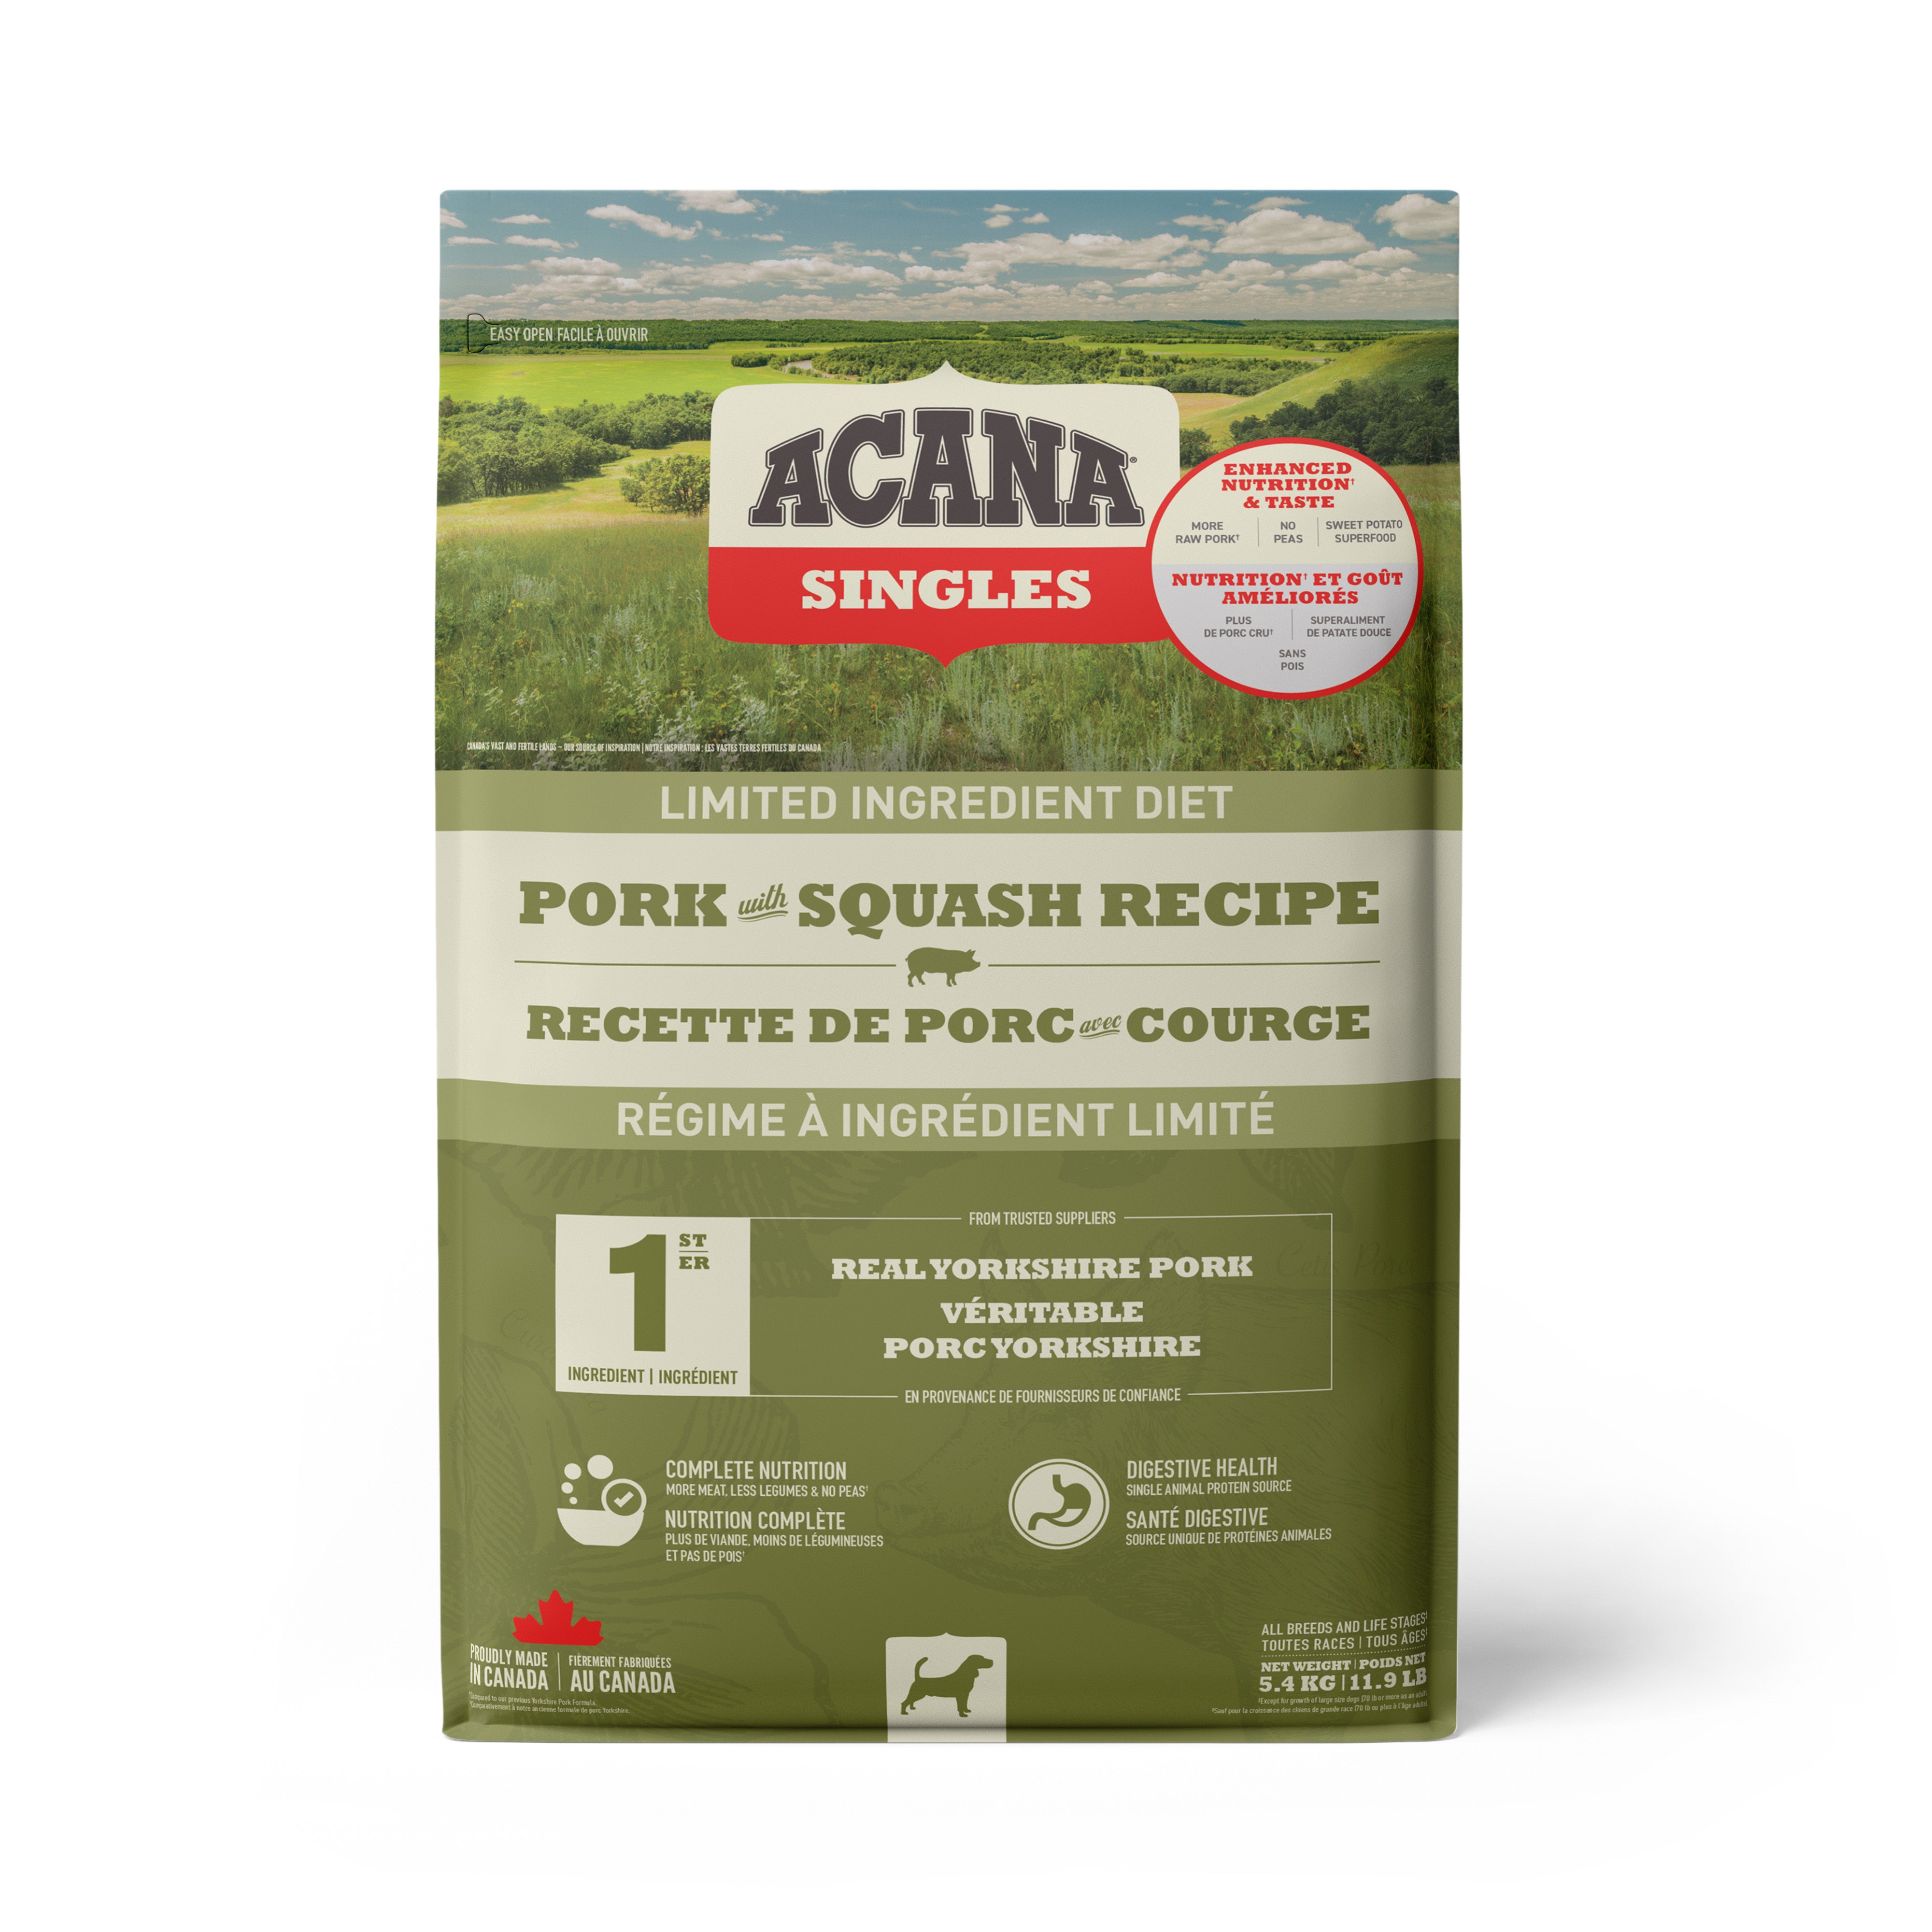 Acana Pork With Squash